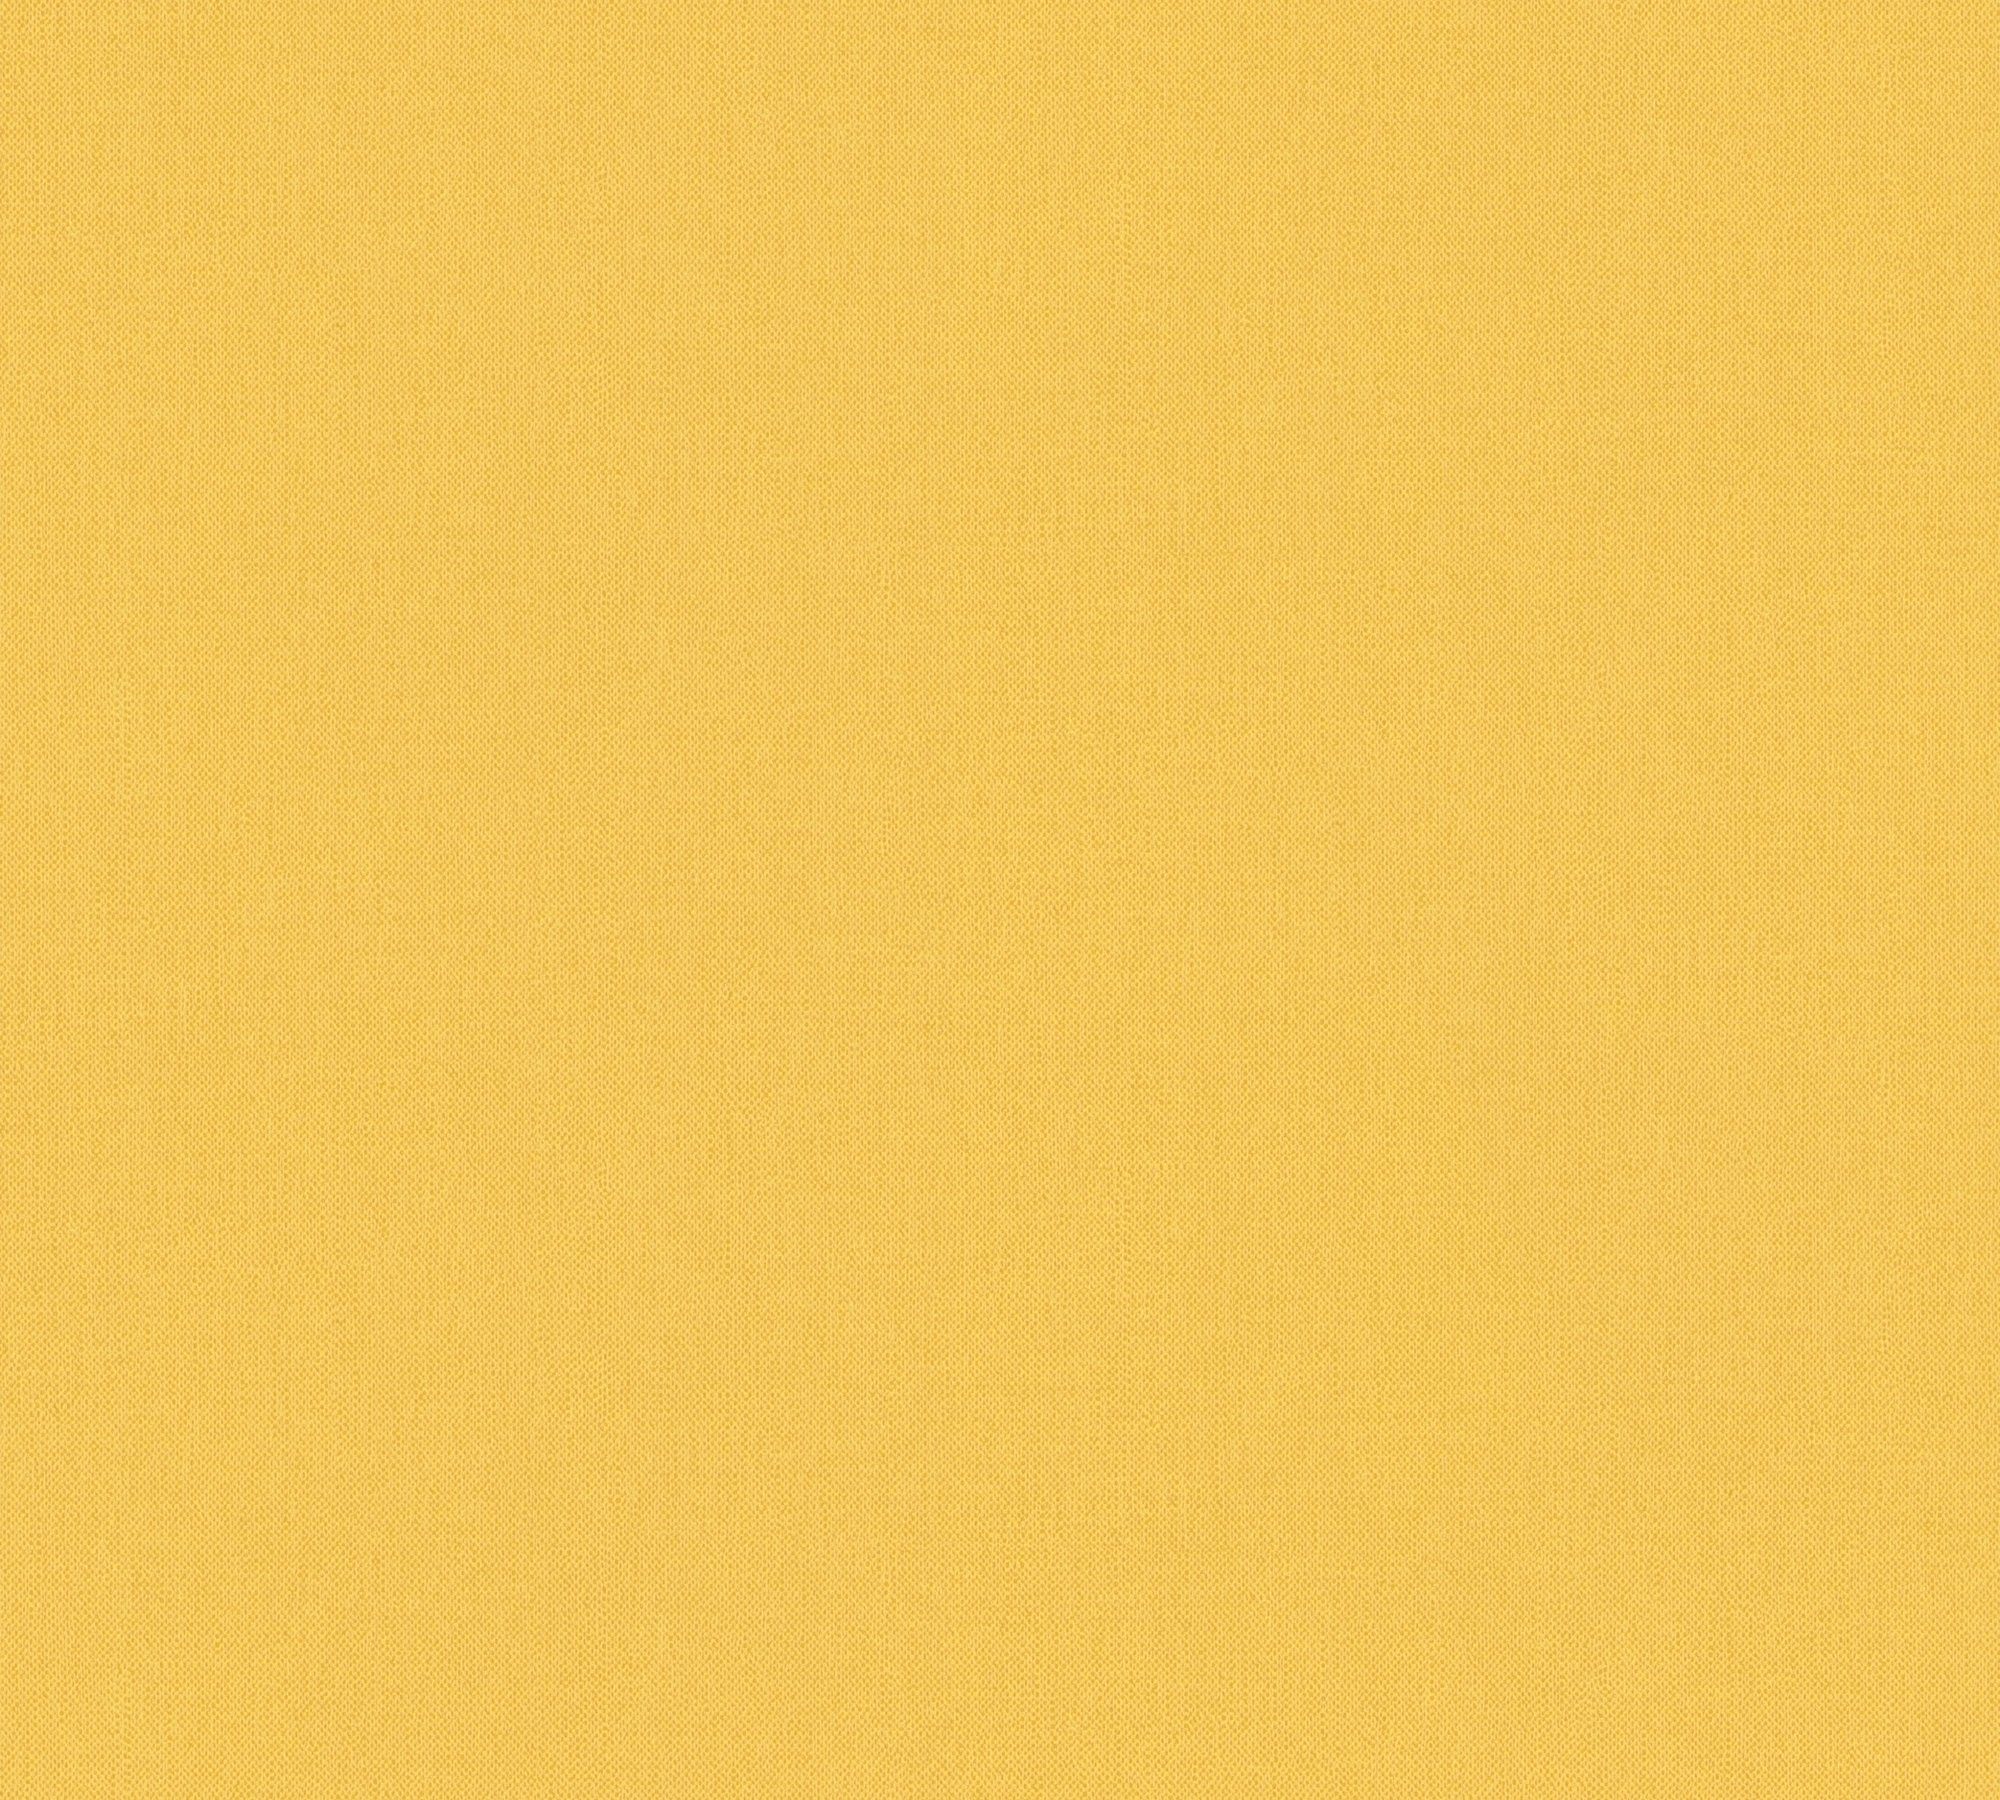 einfarbig, Paper Tapete Vliestapete unifarben, Impression, einfarbig Floral Architects Uni gelb glatt,